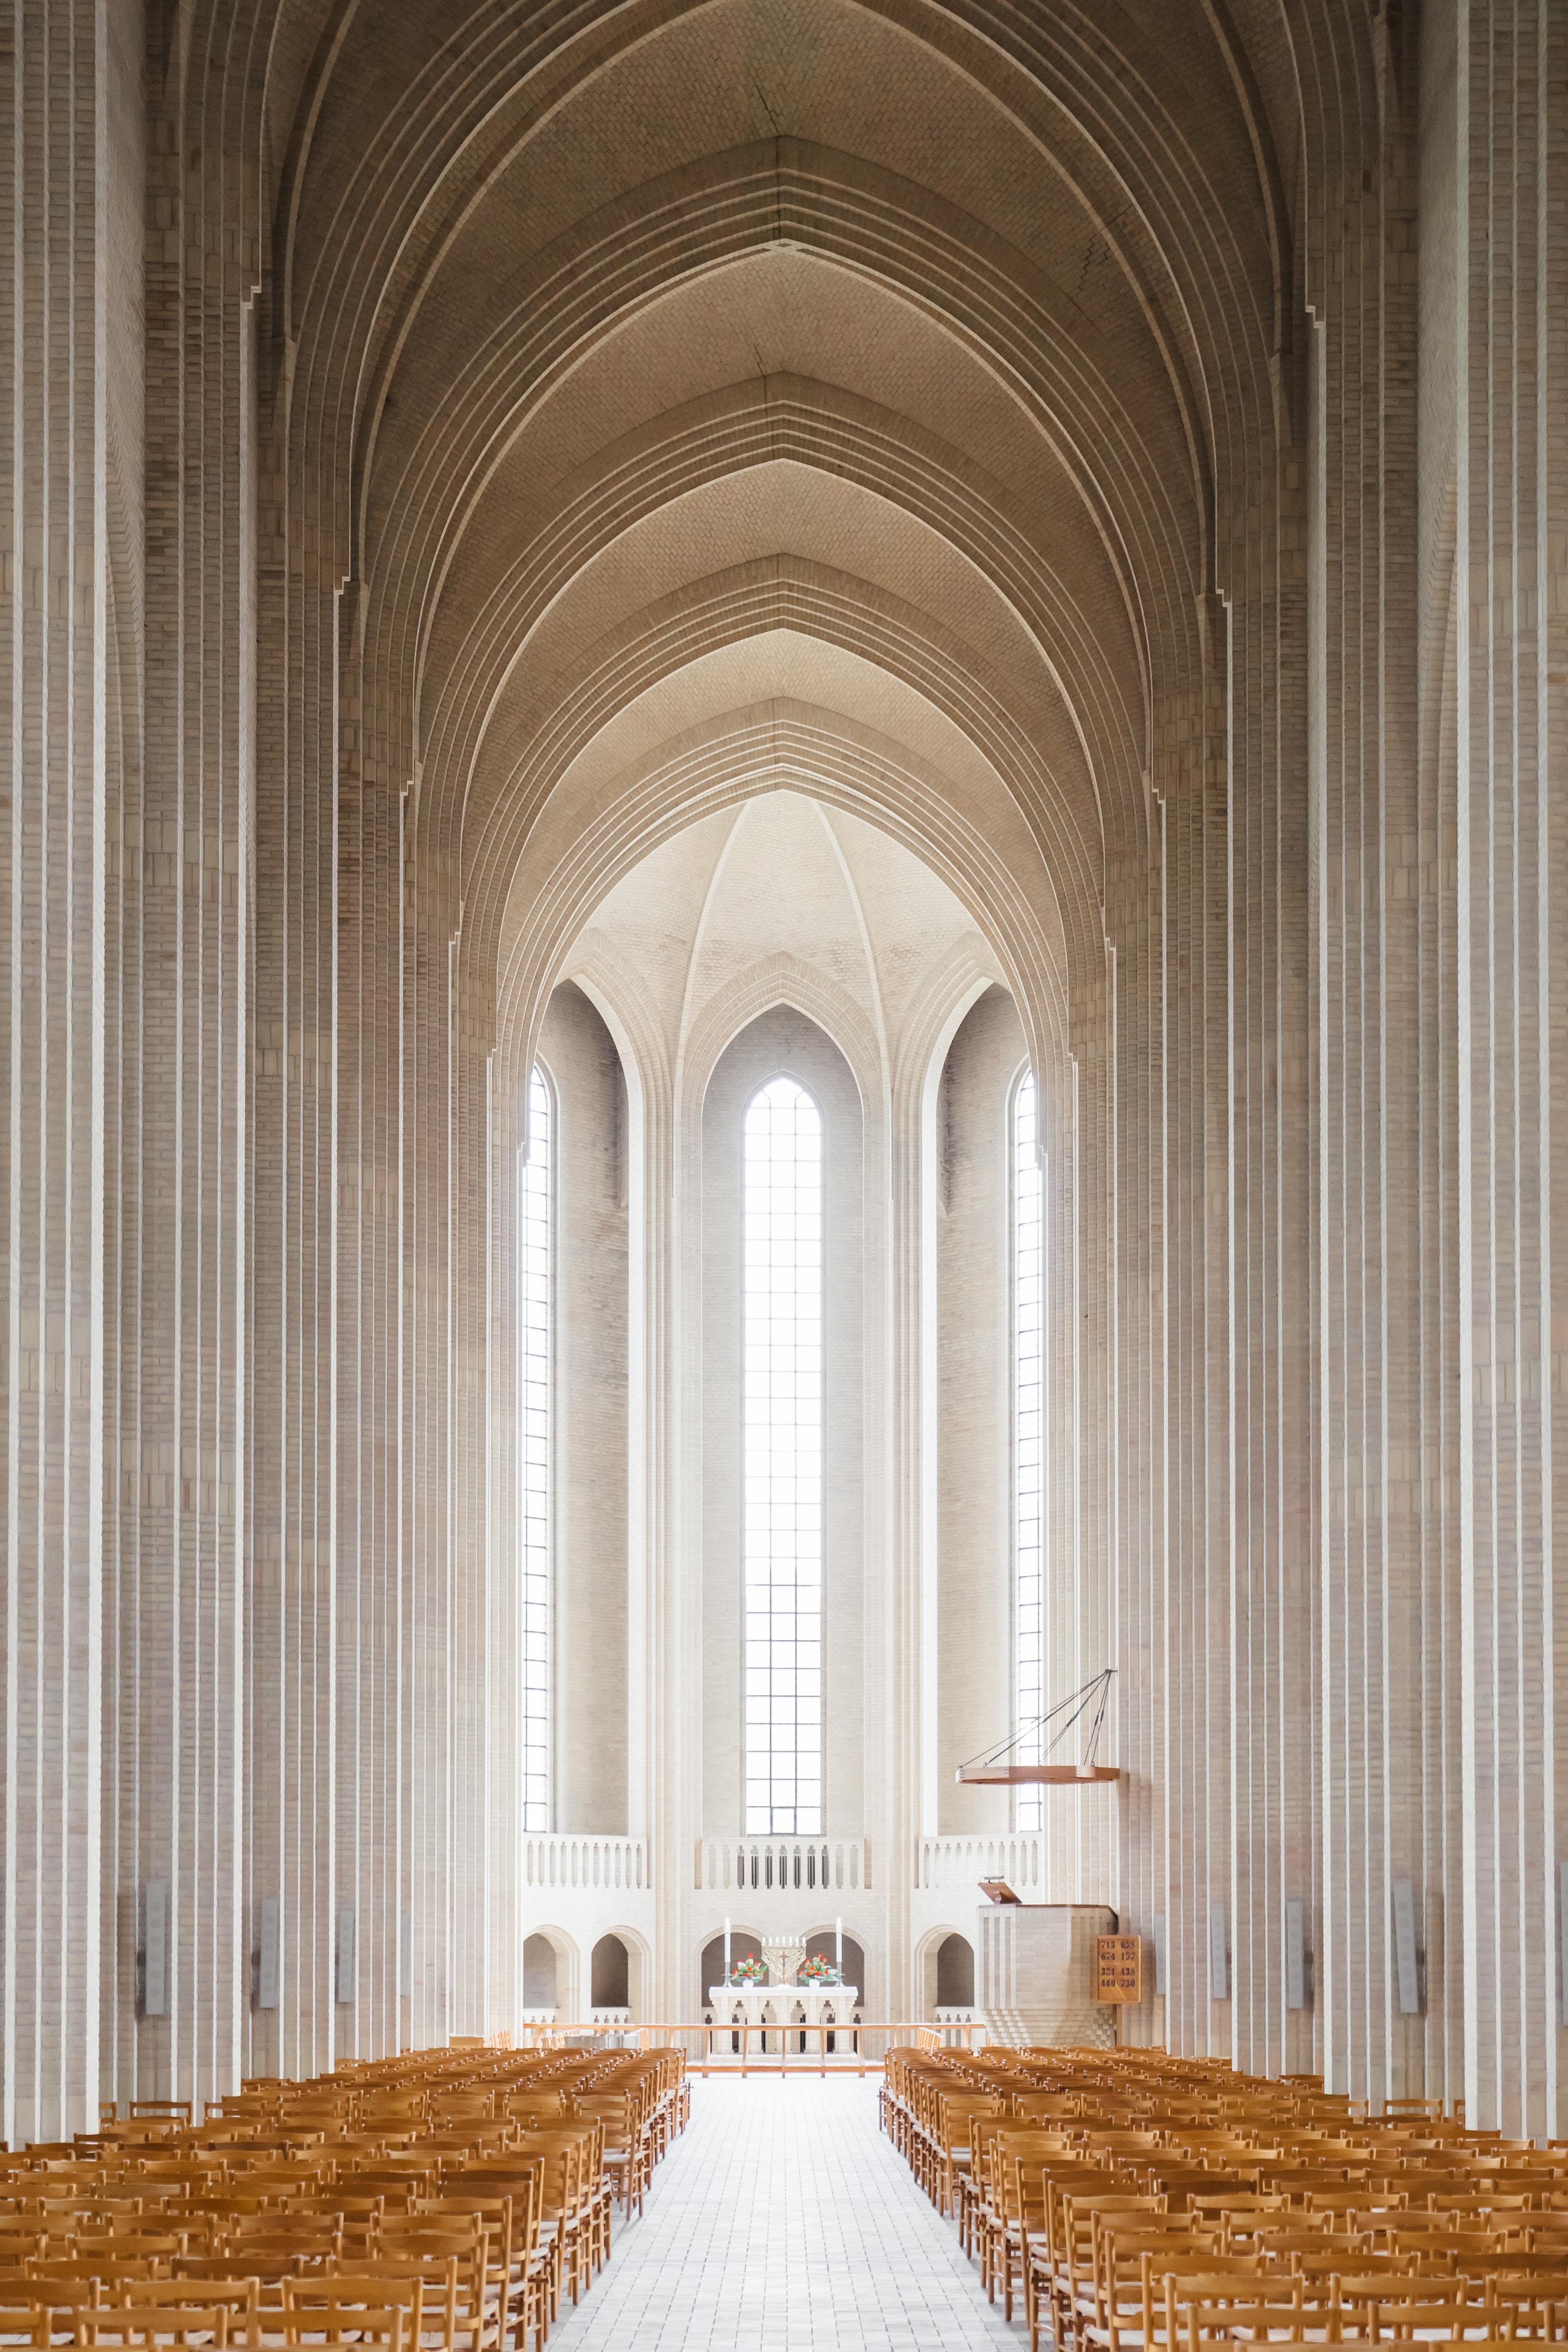 Das Innere einer Kirche mit Reihen von Holzbänken.